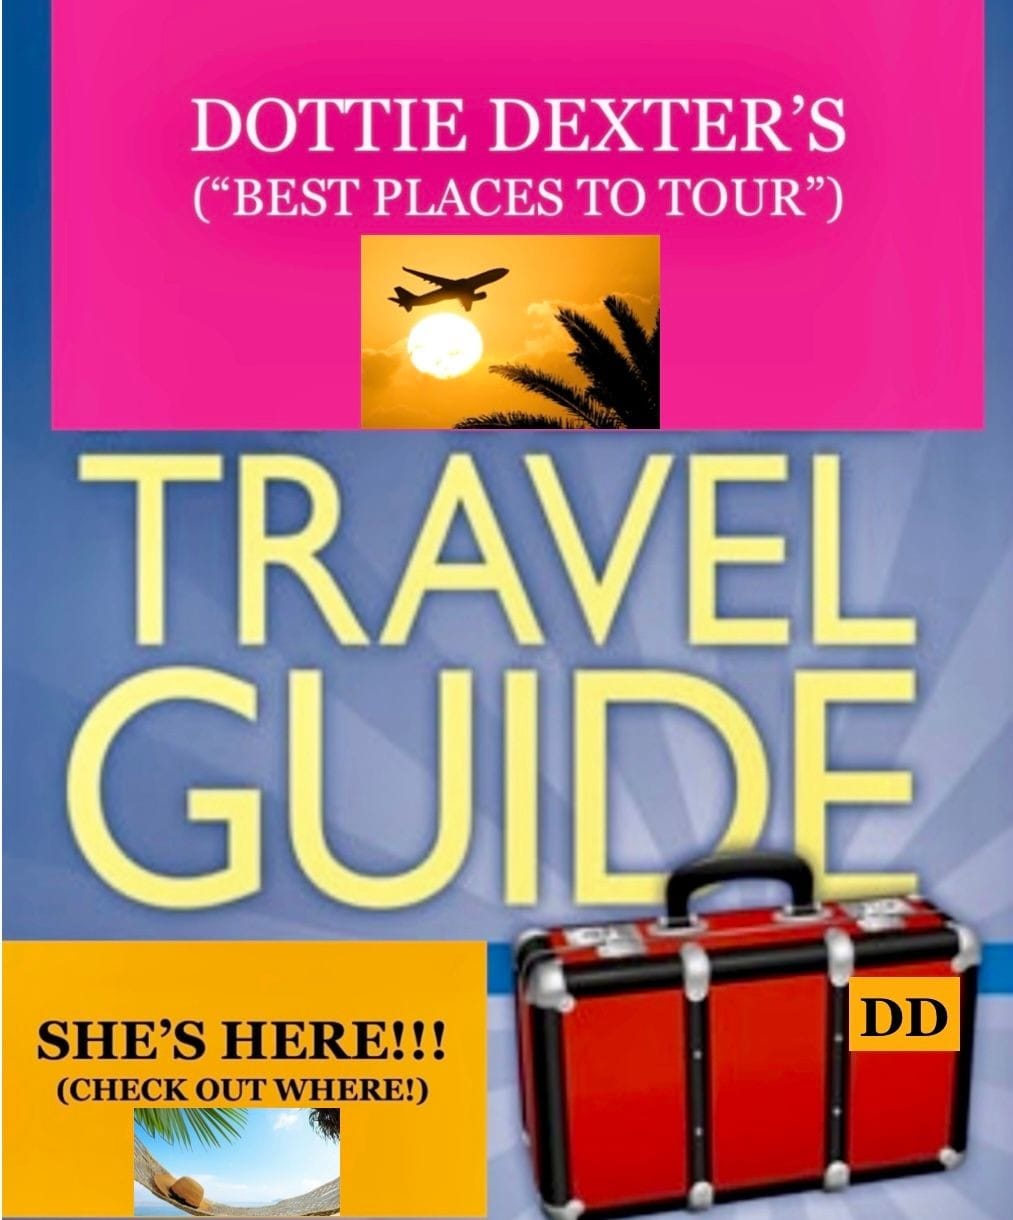 Dottie Dexter's Travel Guide!